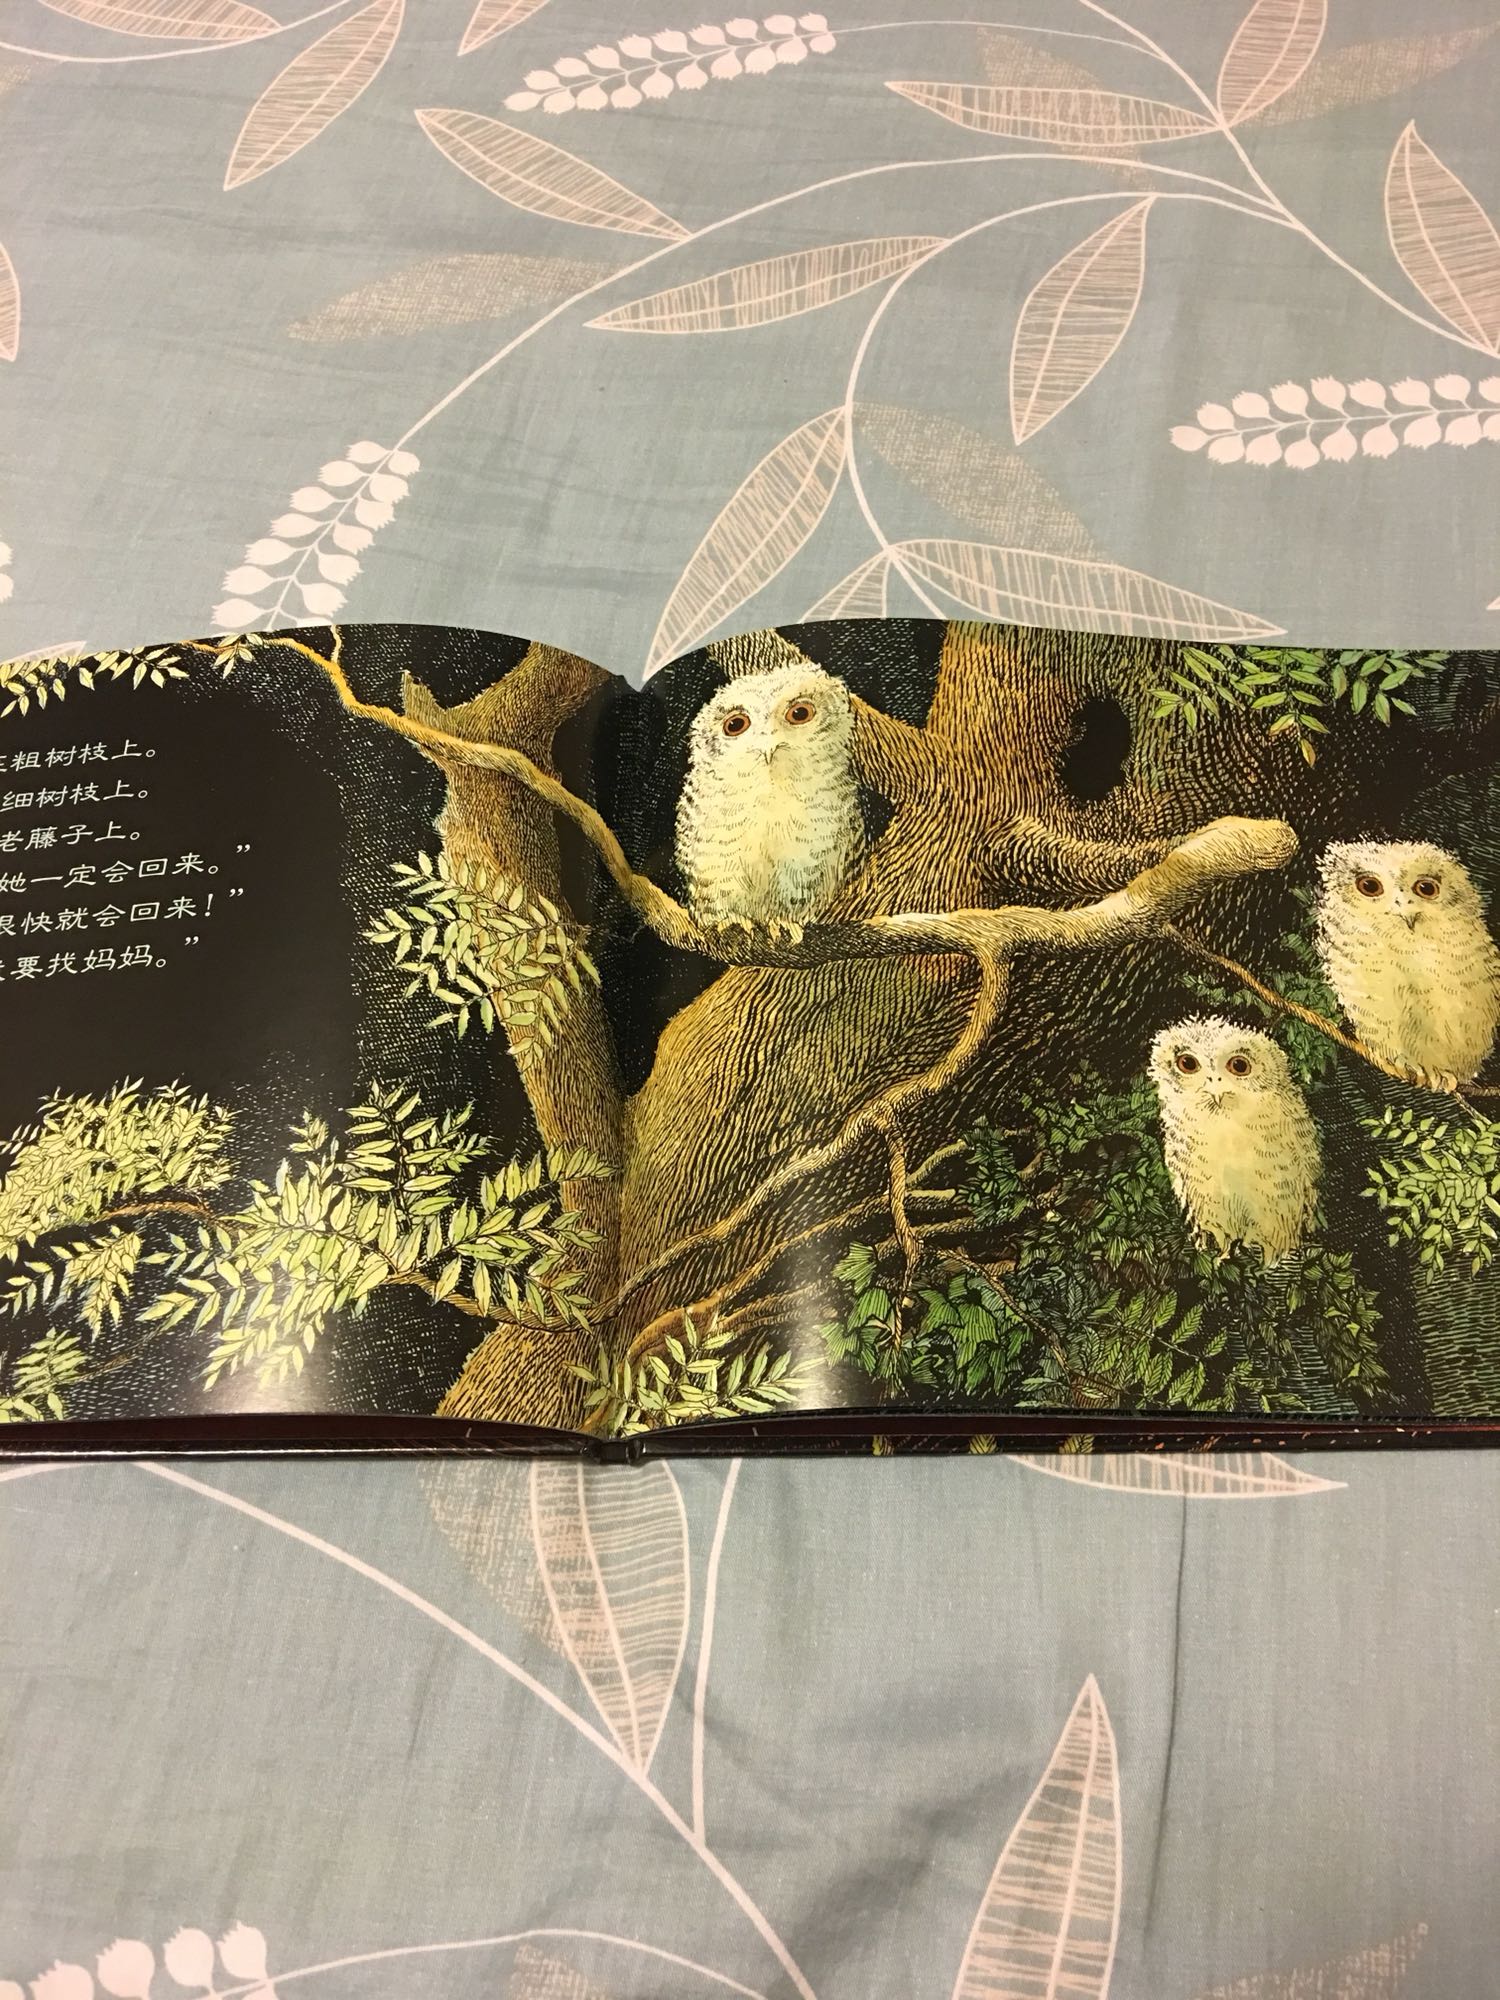 一本温馨感人的绘本，宝宝喜欢，三只猫头鹰的名字都能记得。